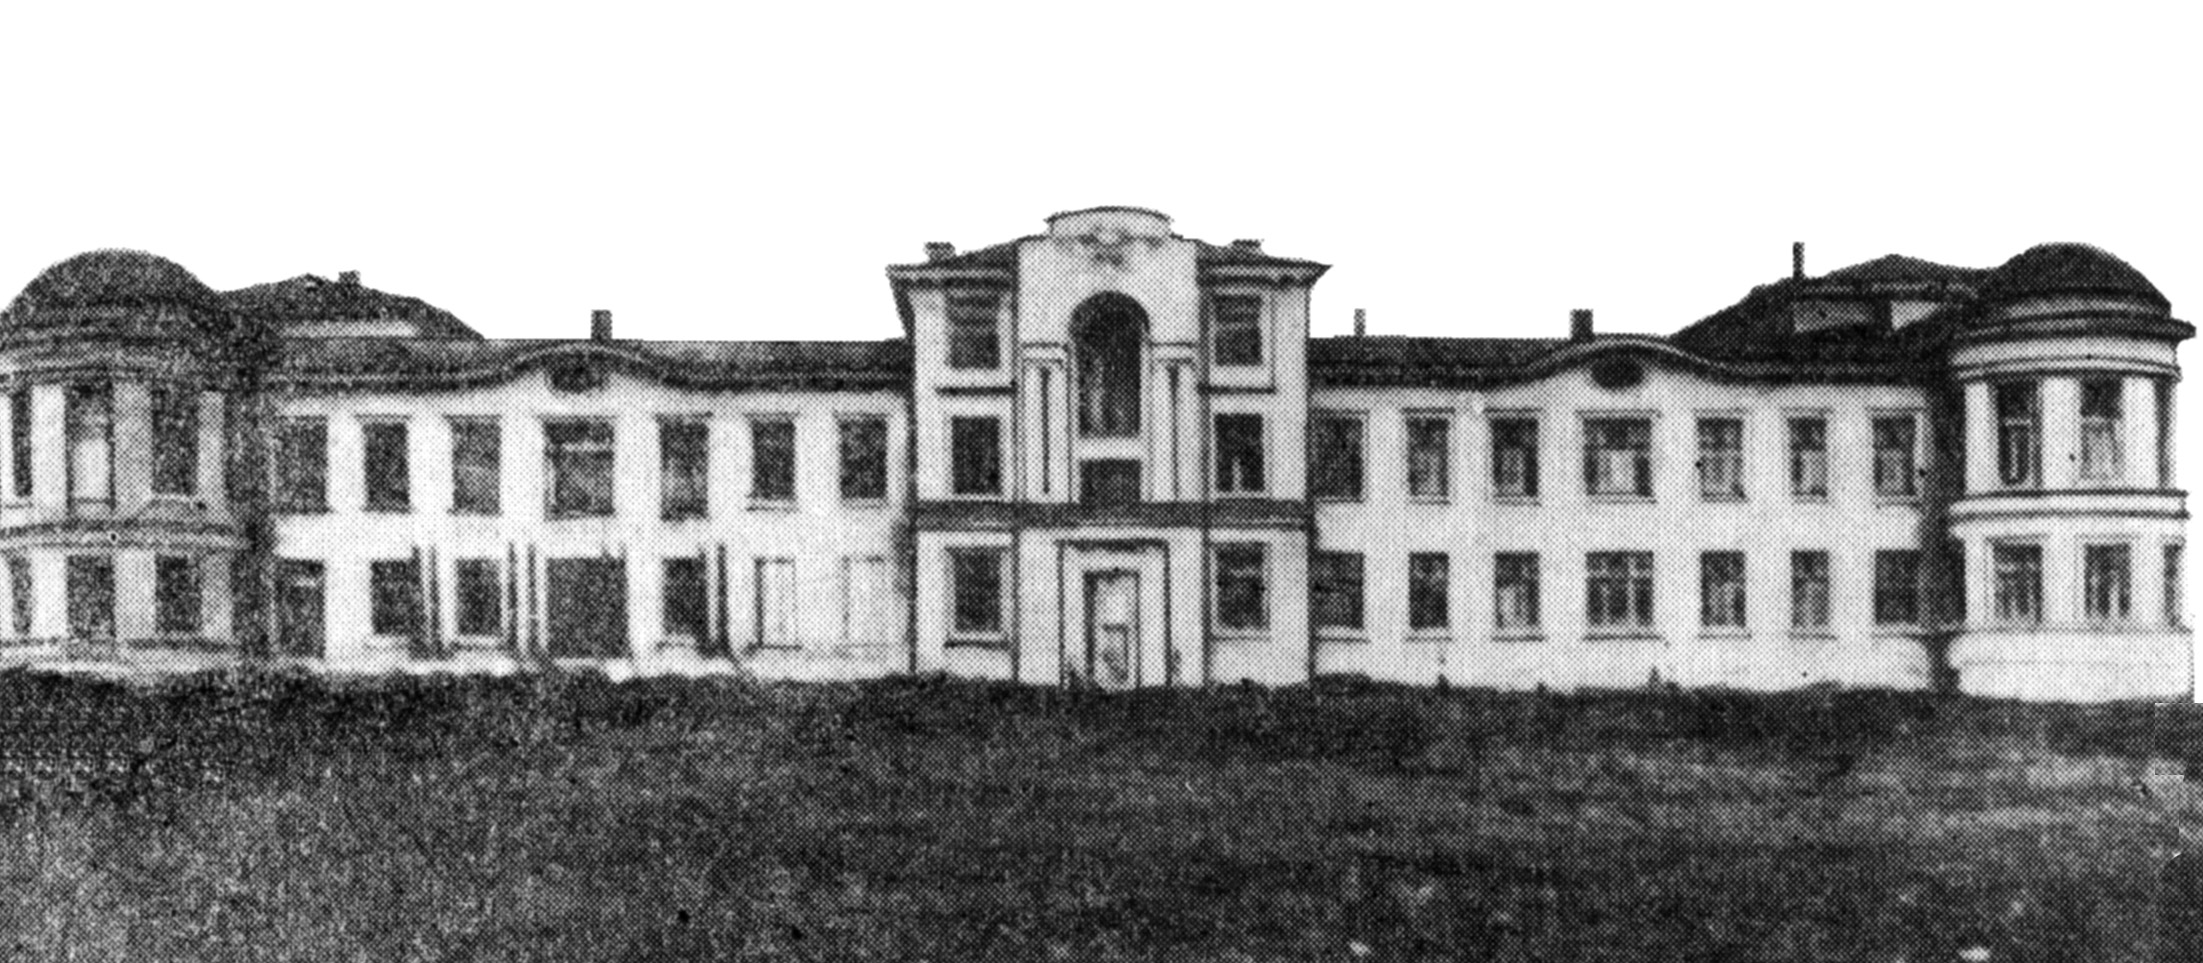 3 Советская больница Саратов 4 корпус